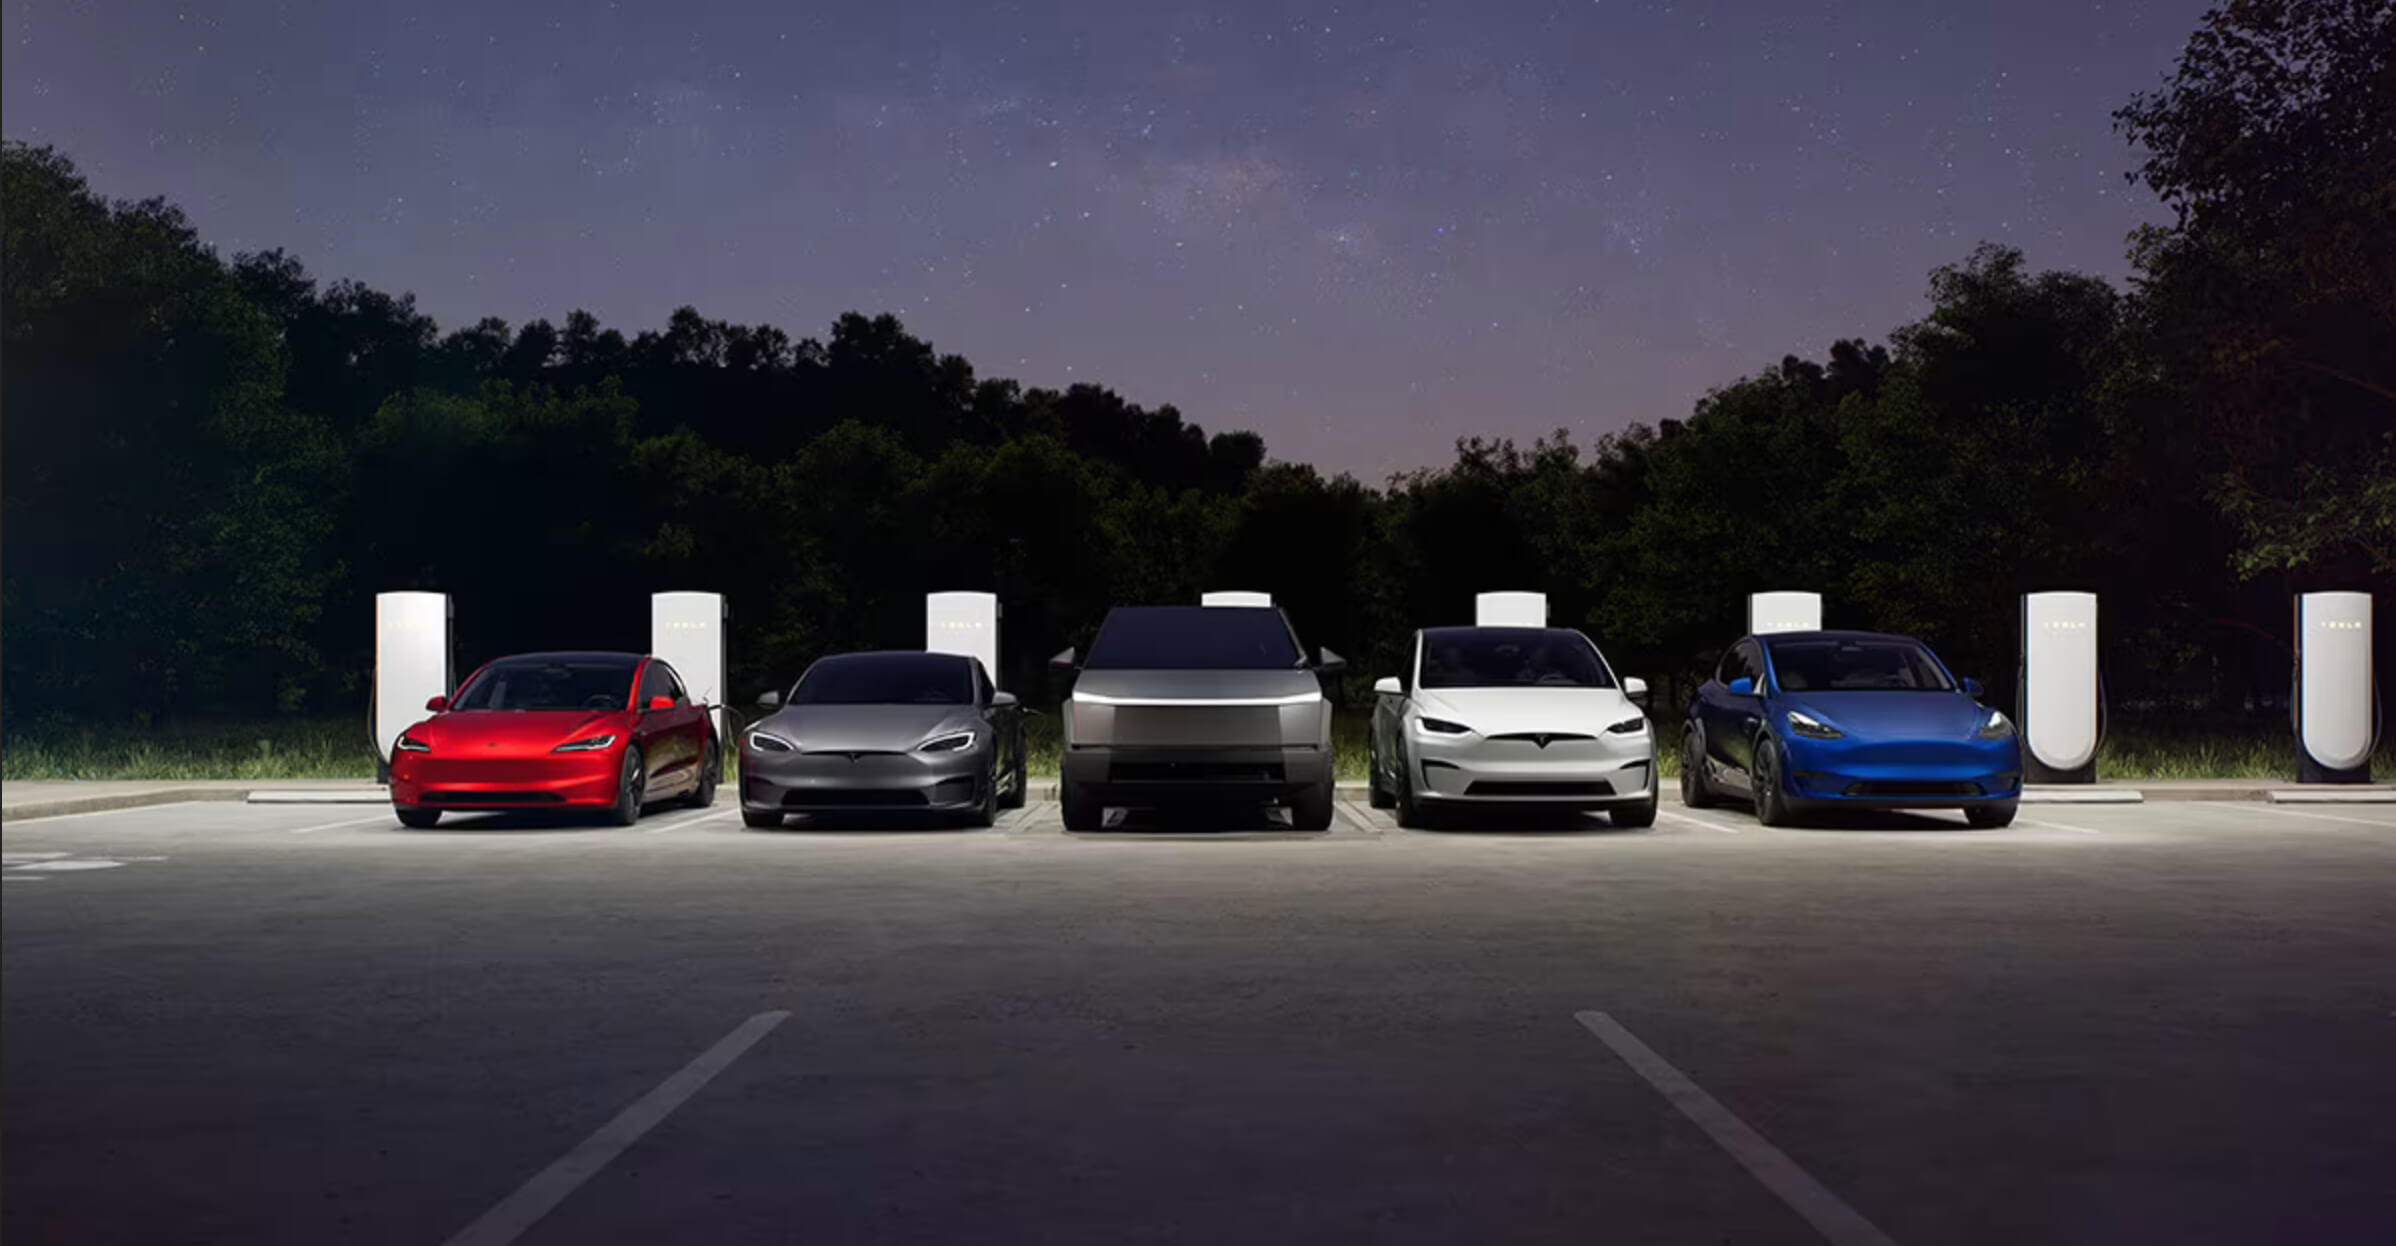 Tesla больше не является просто люксовым брендом, говорит крупный автомобильный магазин